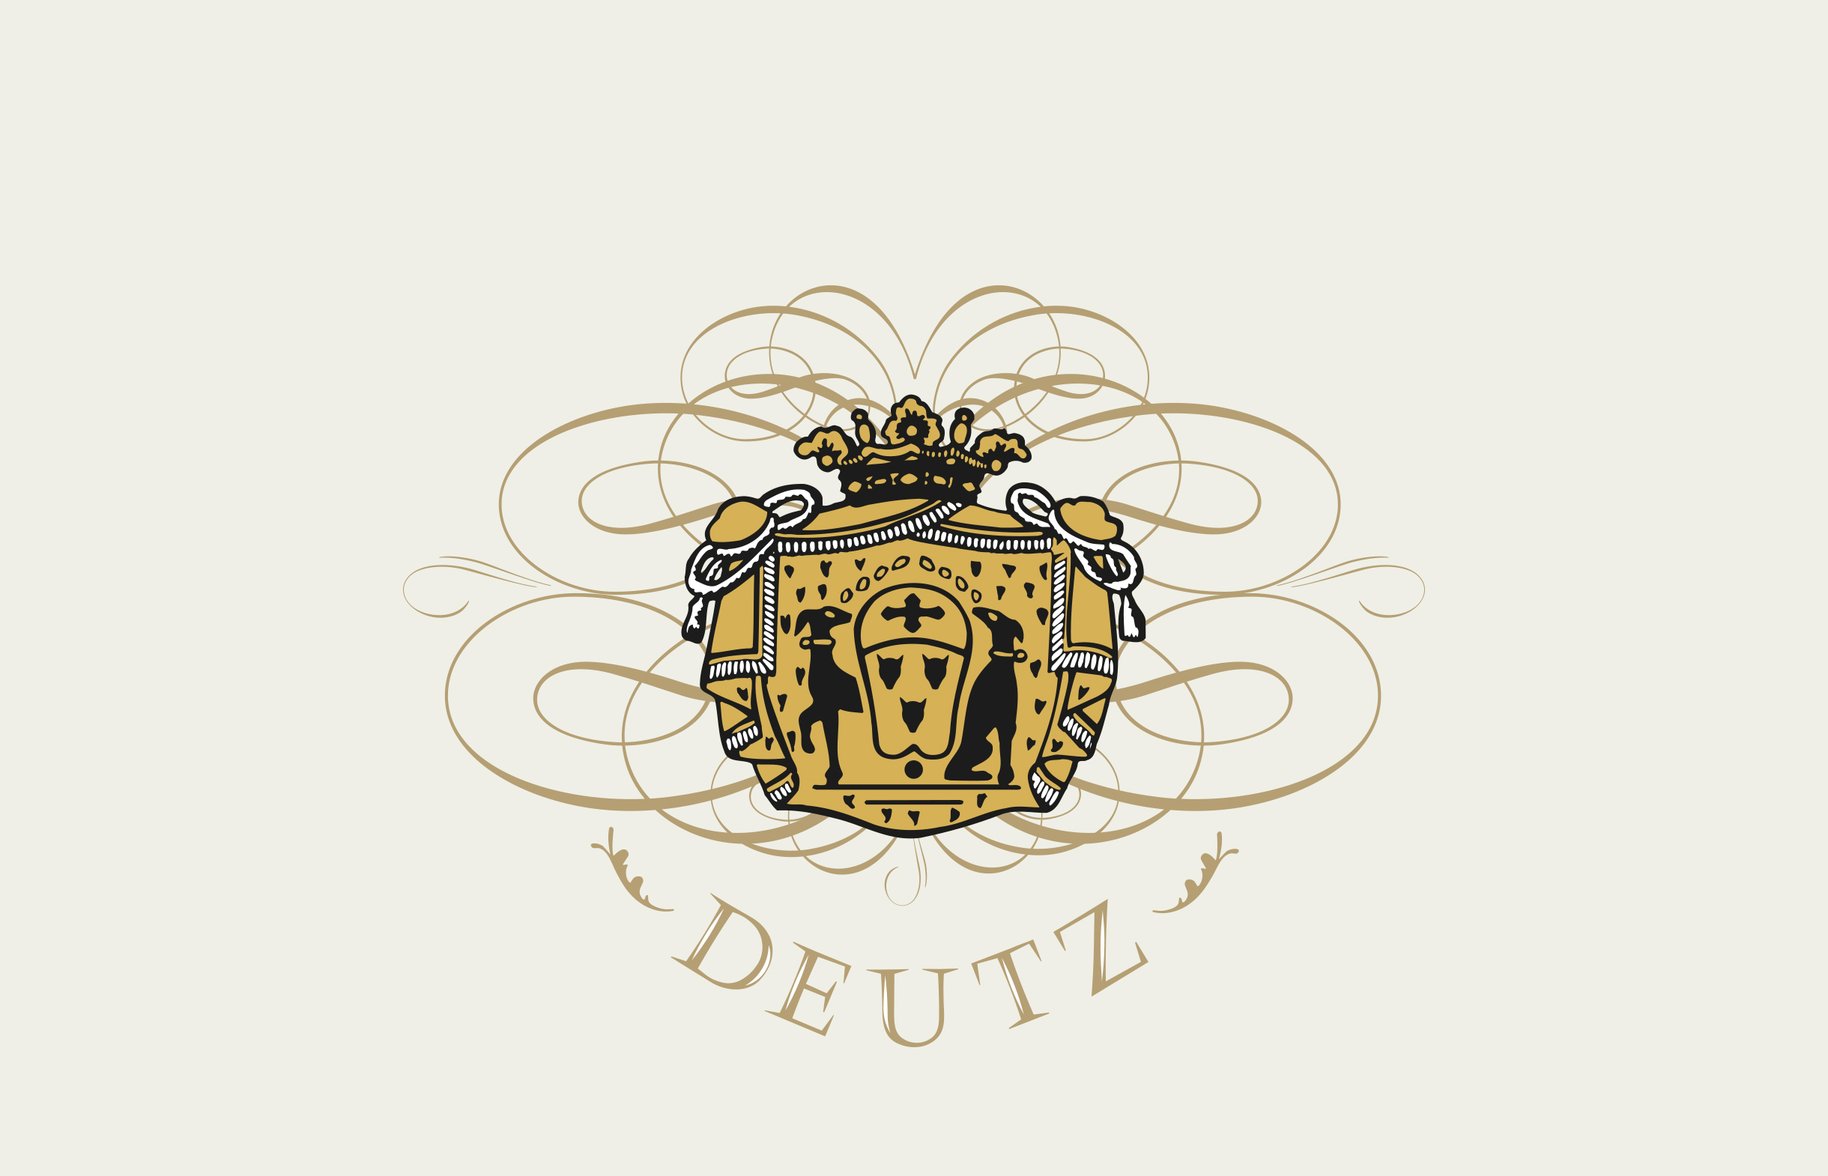 Deutz shield logo graphic